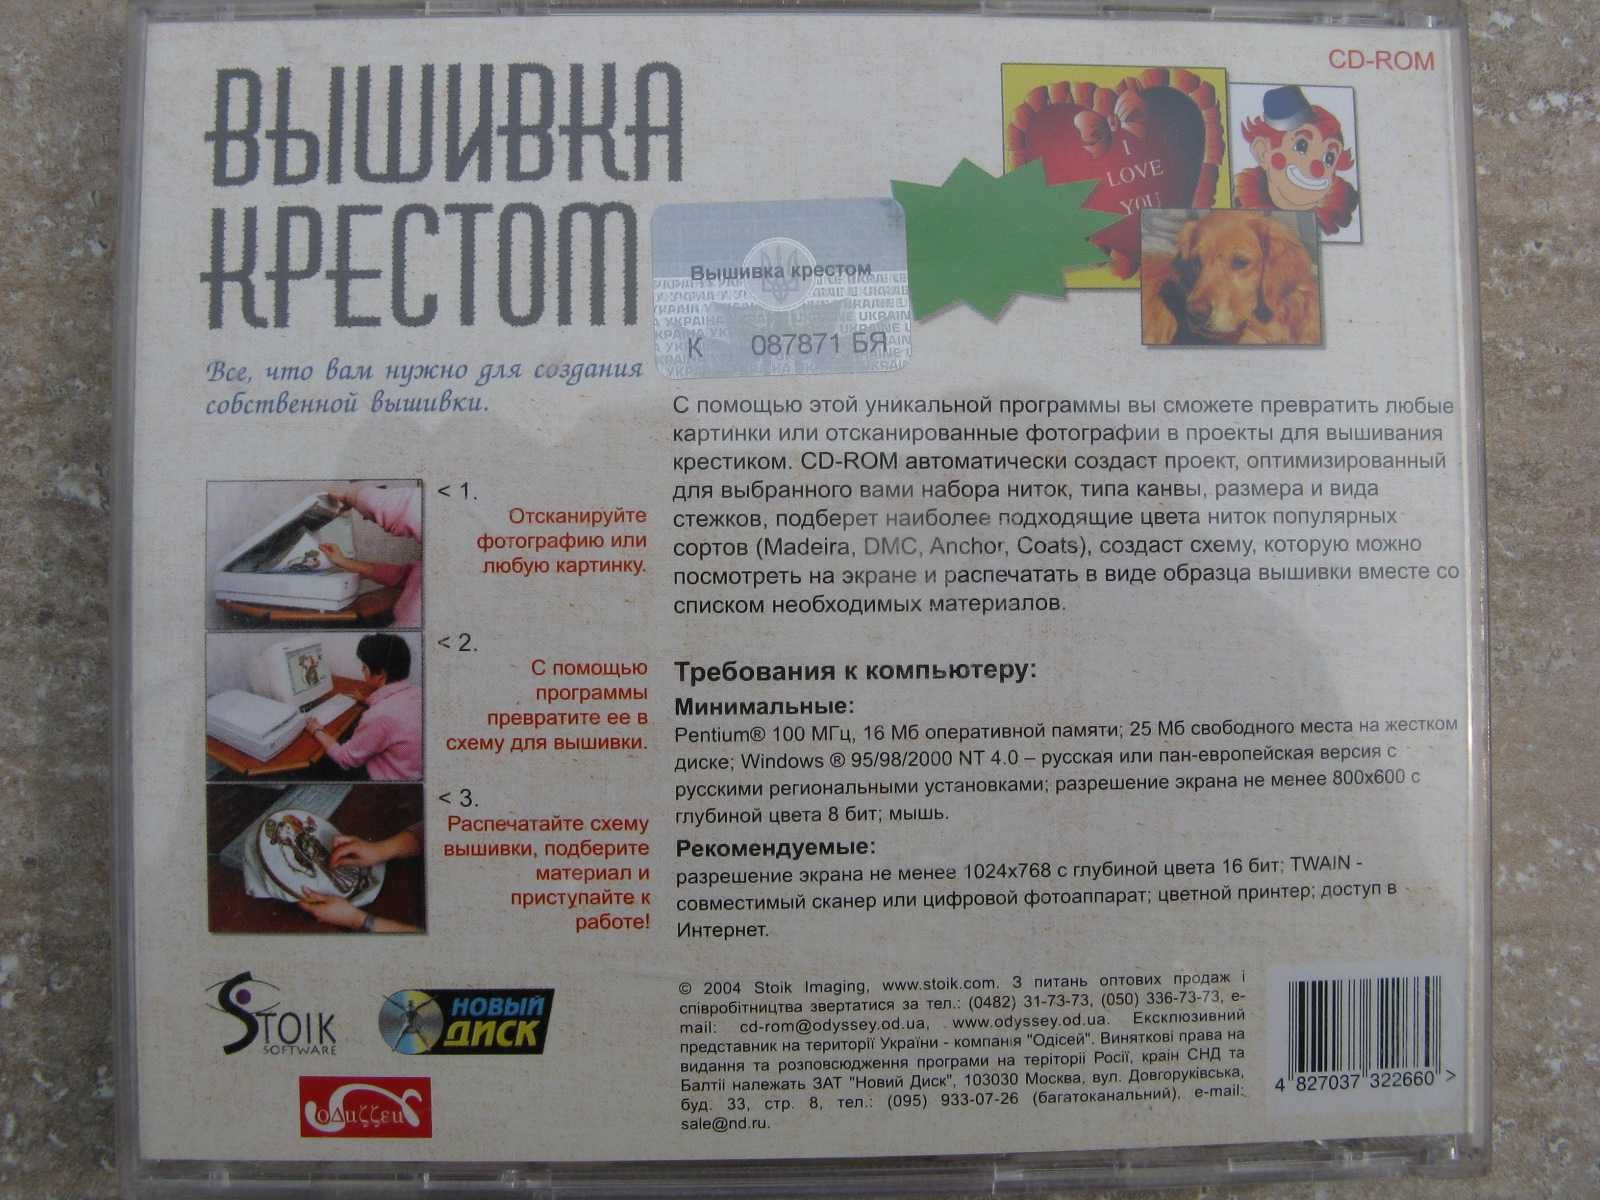 Продам редкий CD диск с программой Вышивка крестом лиценз